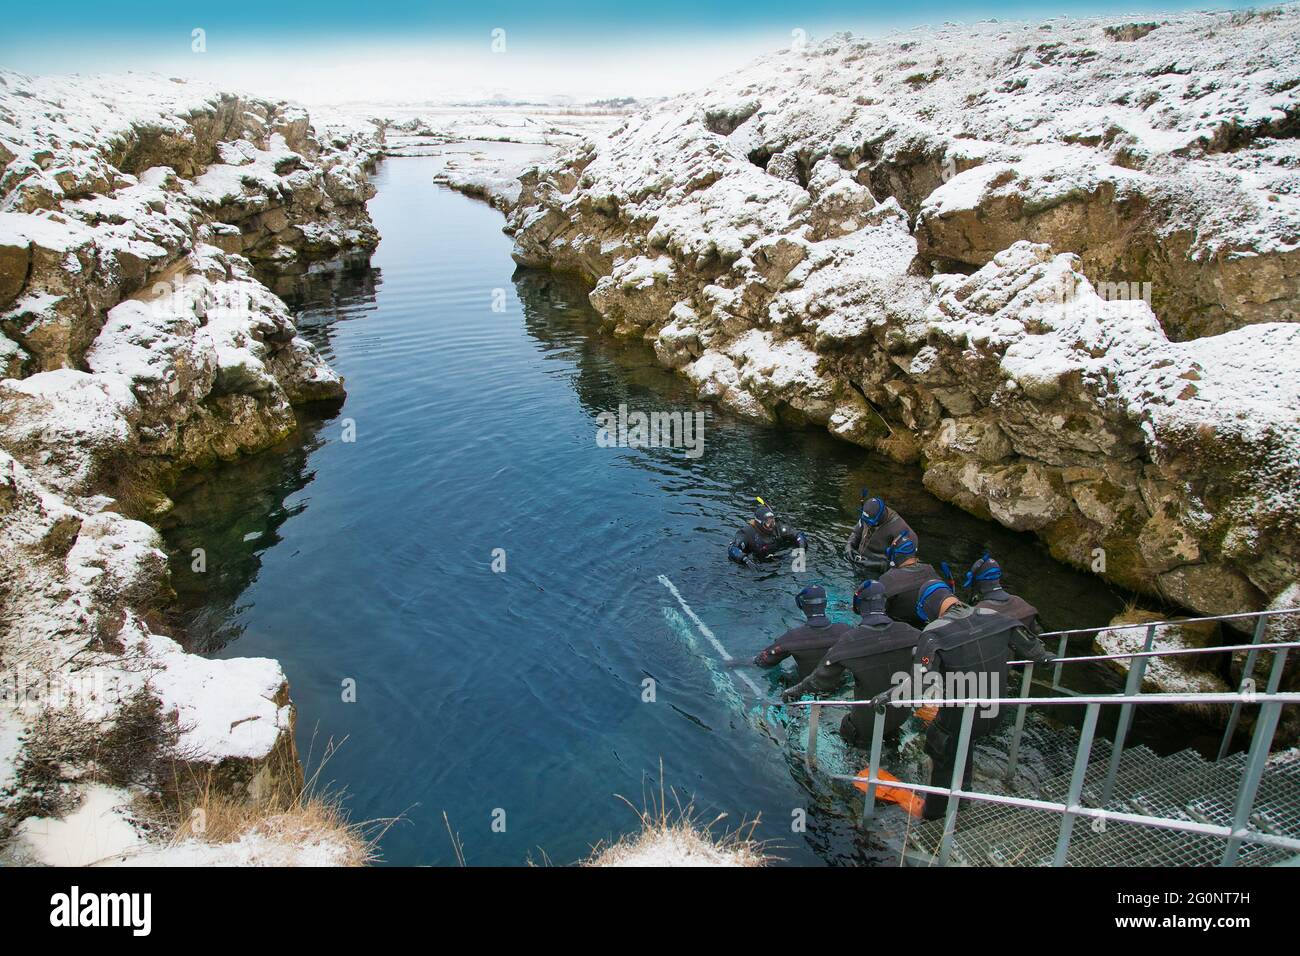 Silfra, Islande-fév 19, 2020: Snorkelers se préparant à entrer dans l'eau à Silfra Rift, le lieu où sont eurasiens et la plaque tectonique américaine Banque D'Images